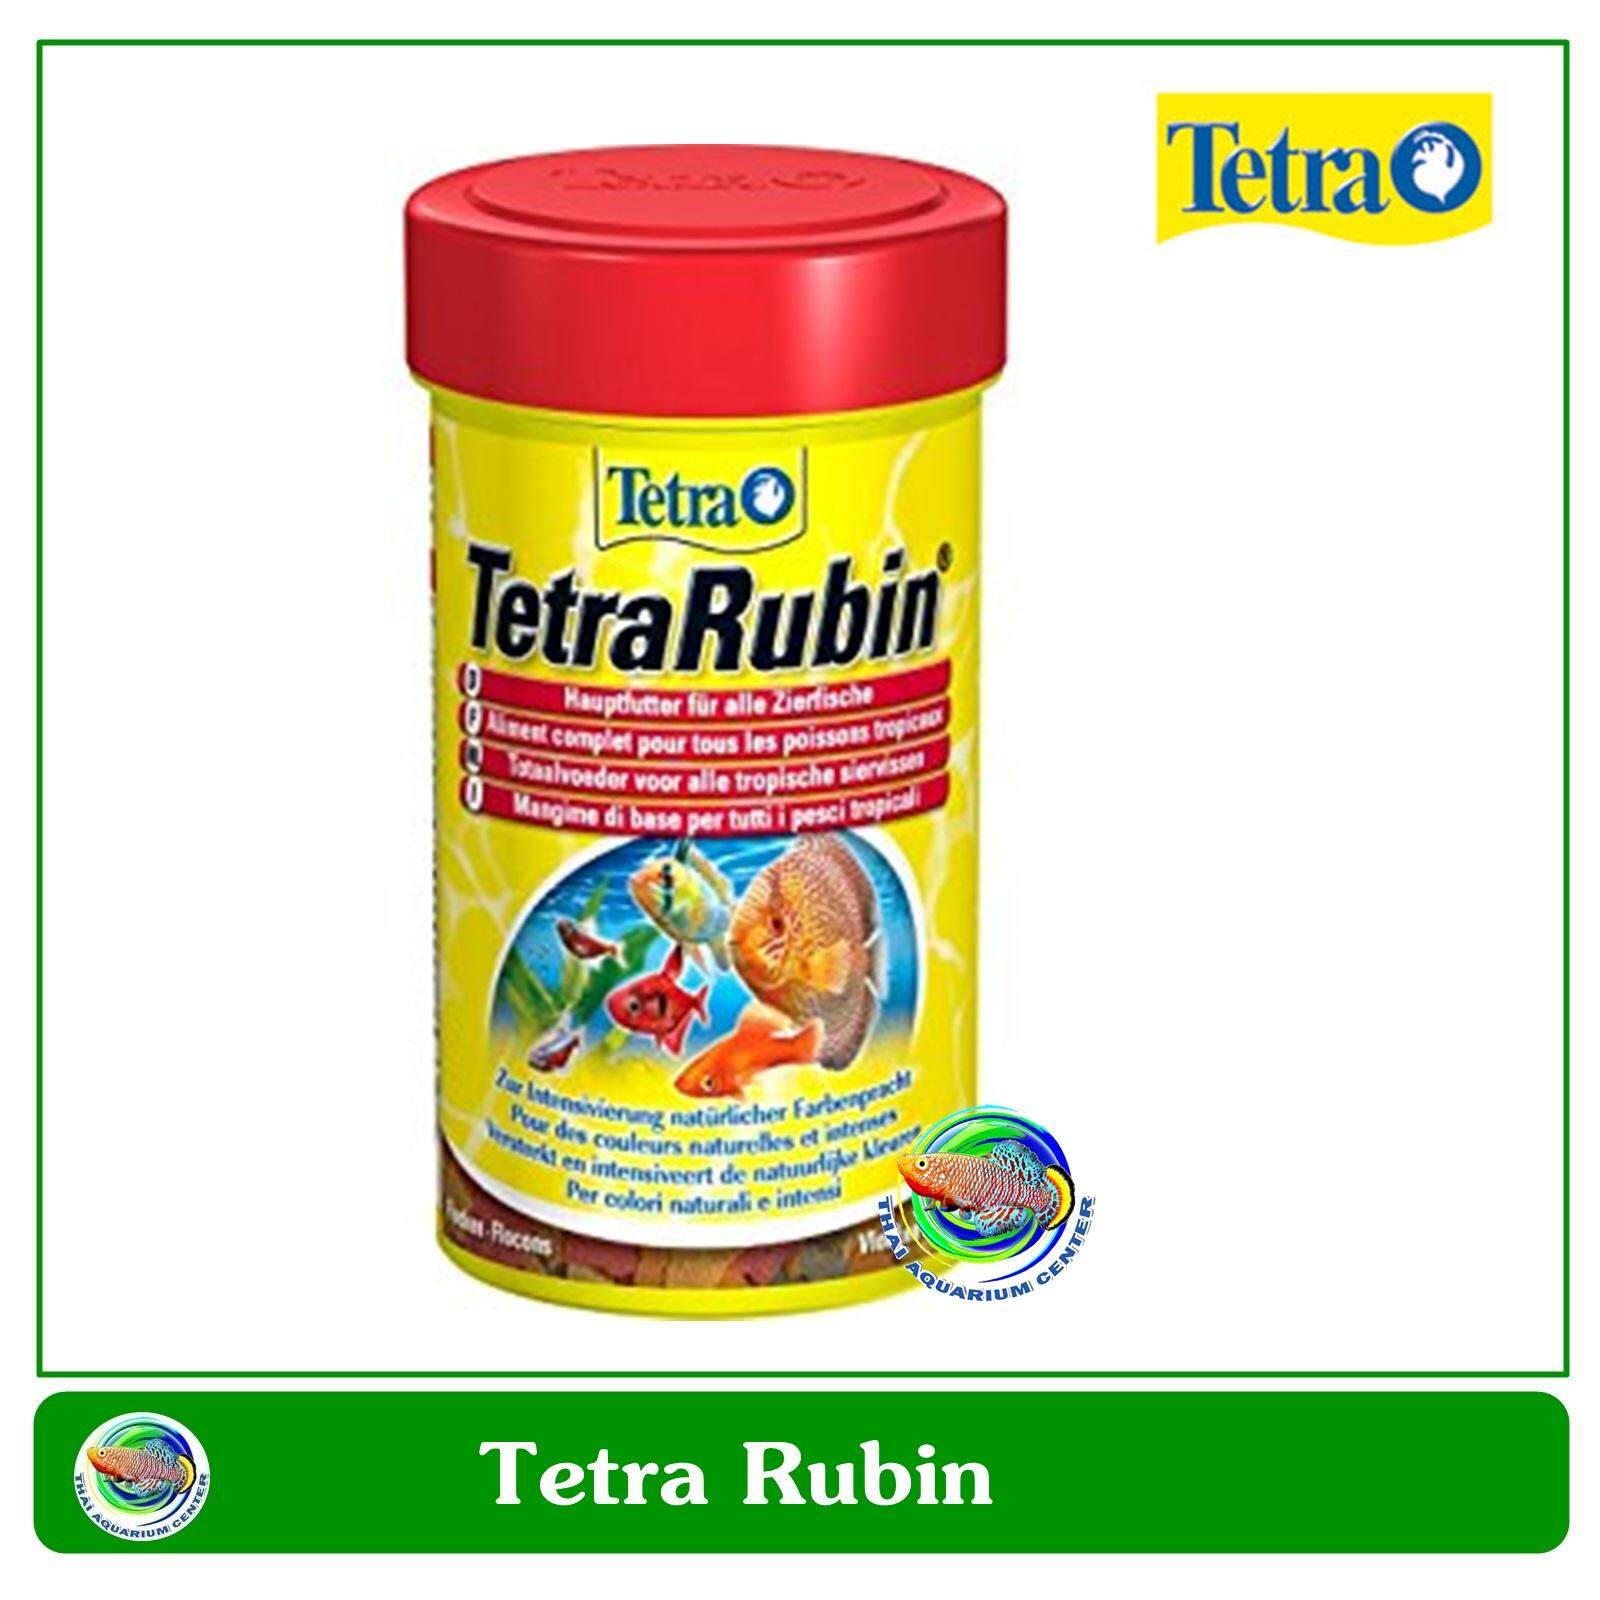 อาหารปลาชนิดแผ่น สำหรับปลาทุกชนิดเขตร้อนชื้น Tetra Rubins 52 g.